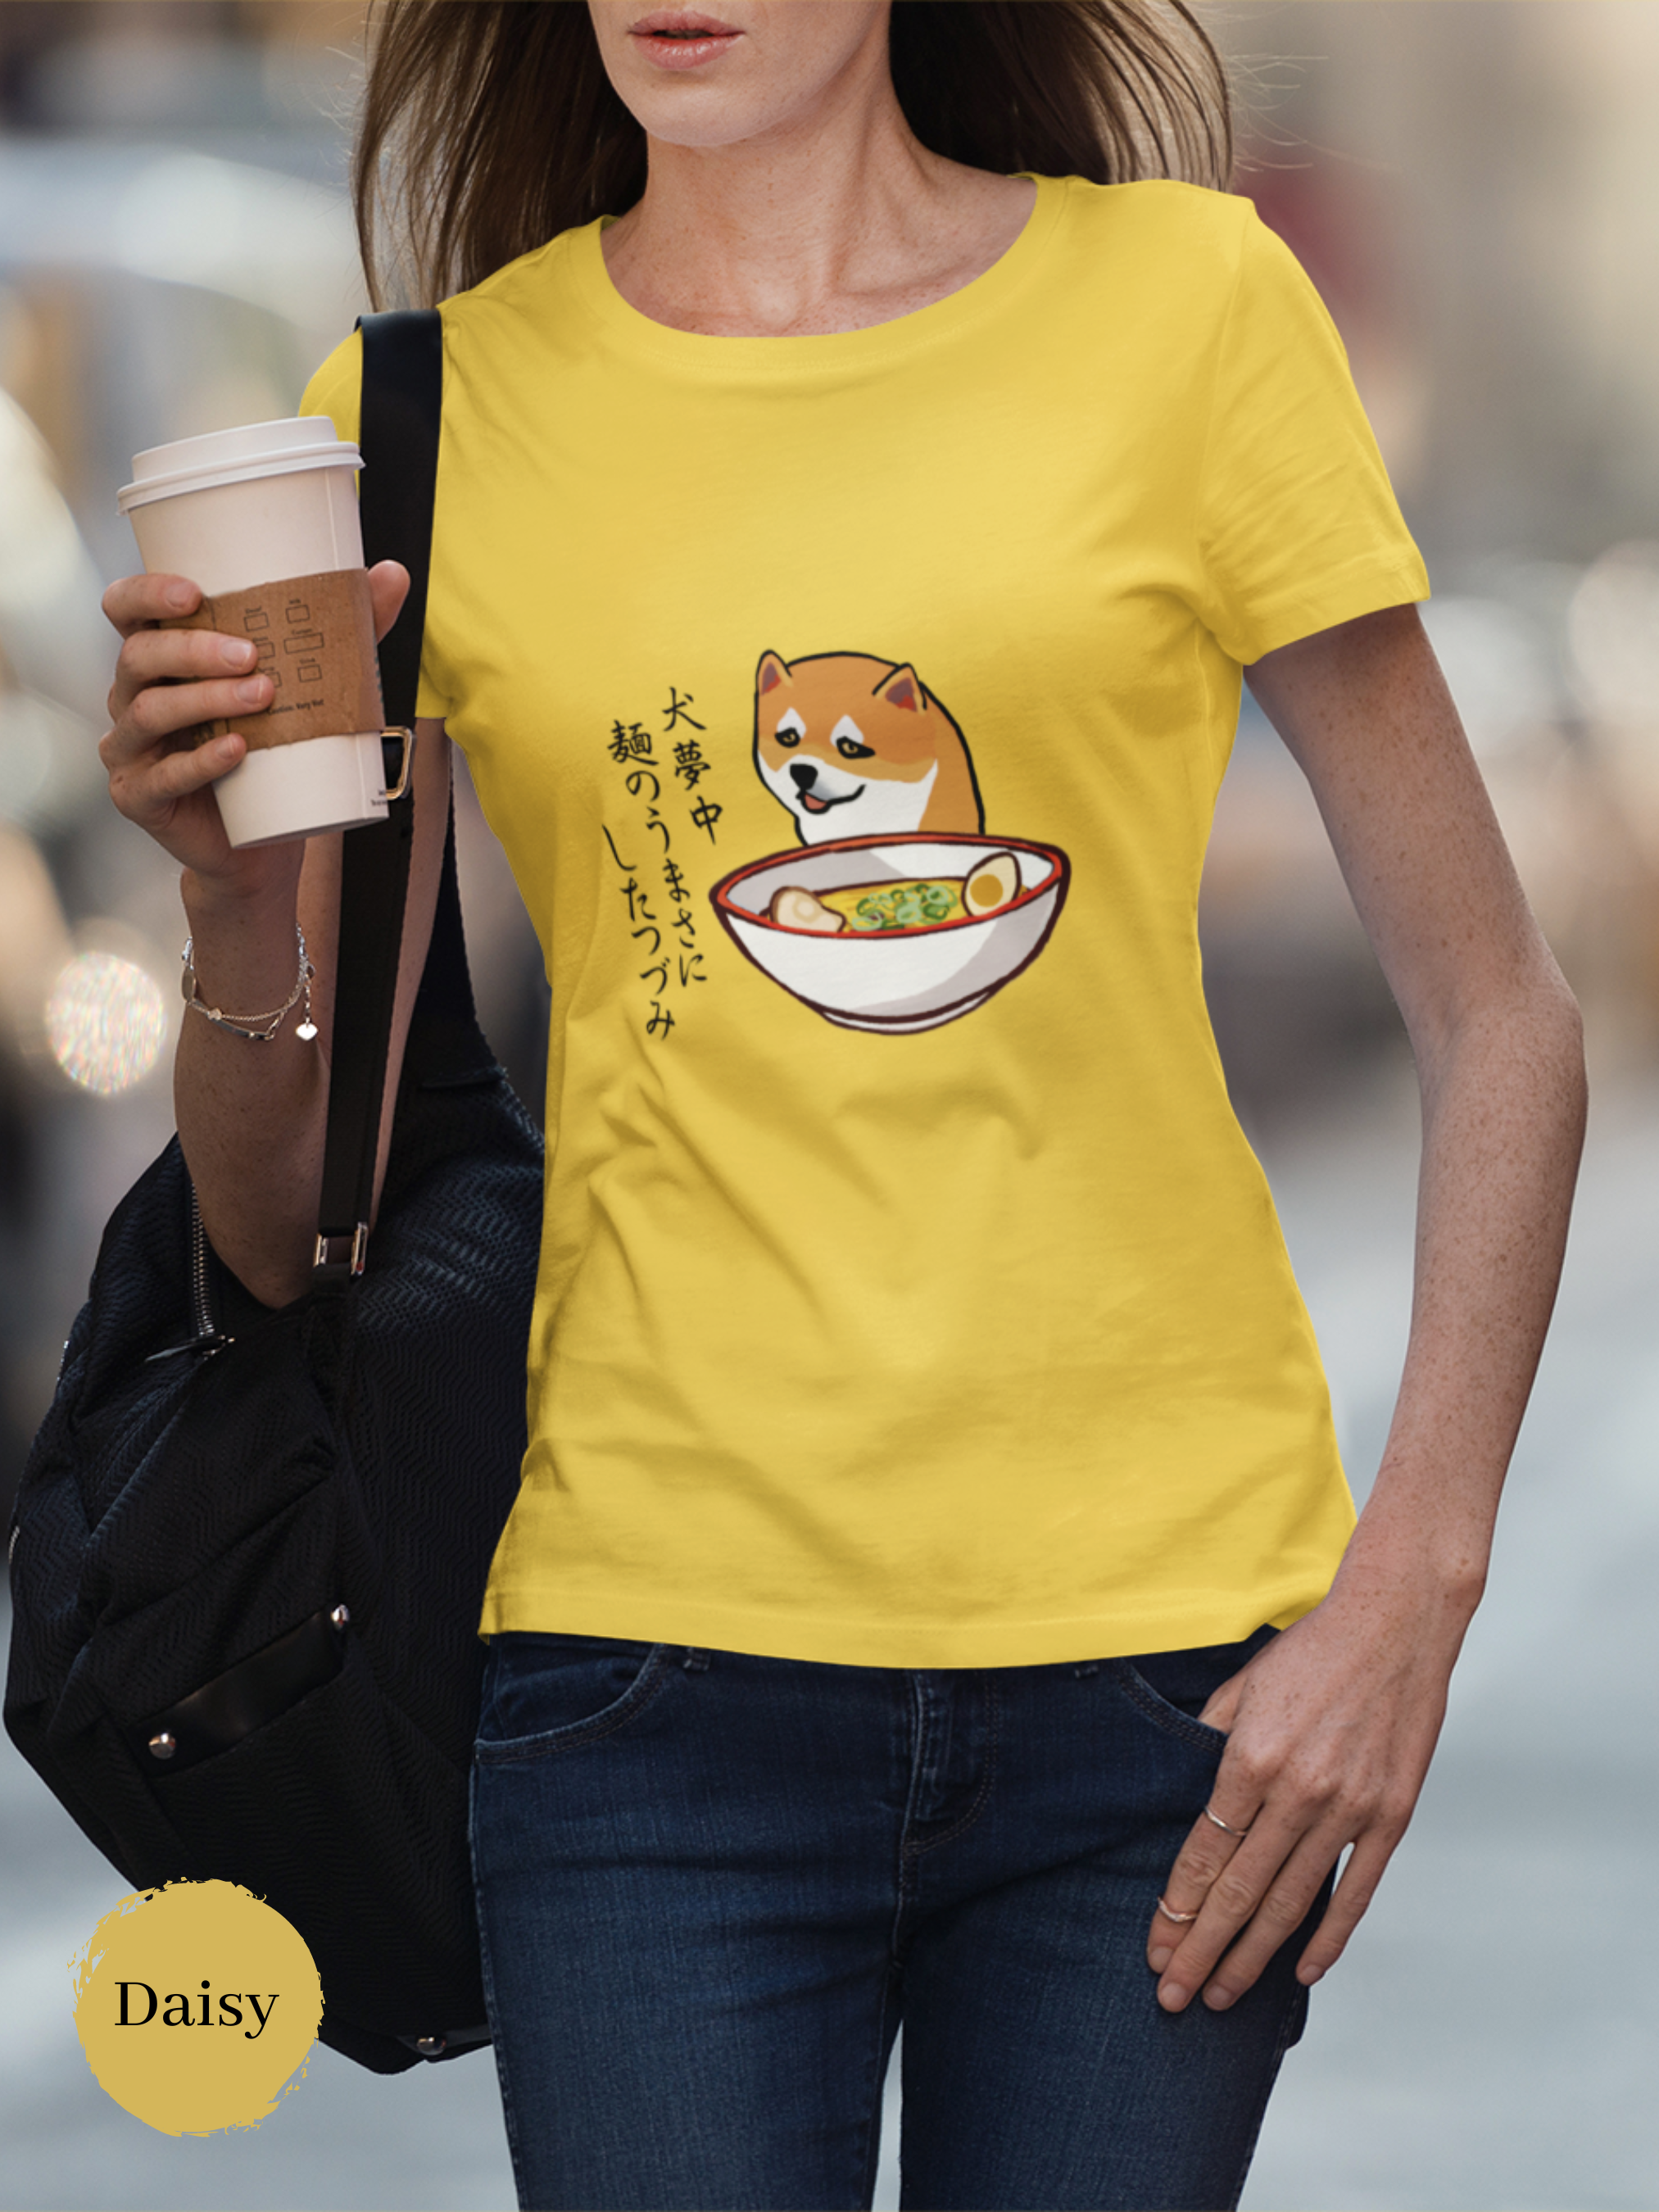 Ramen T-shirt: Shiba Inu Ramen Art Haiku - Japanese Foodie Shirt with Unique Ramen Design